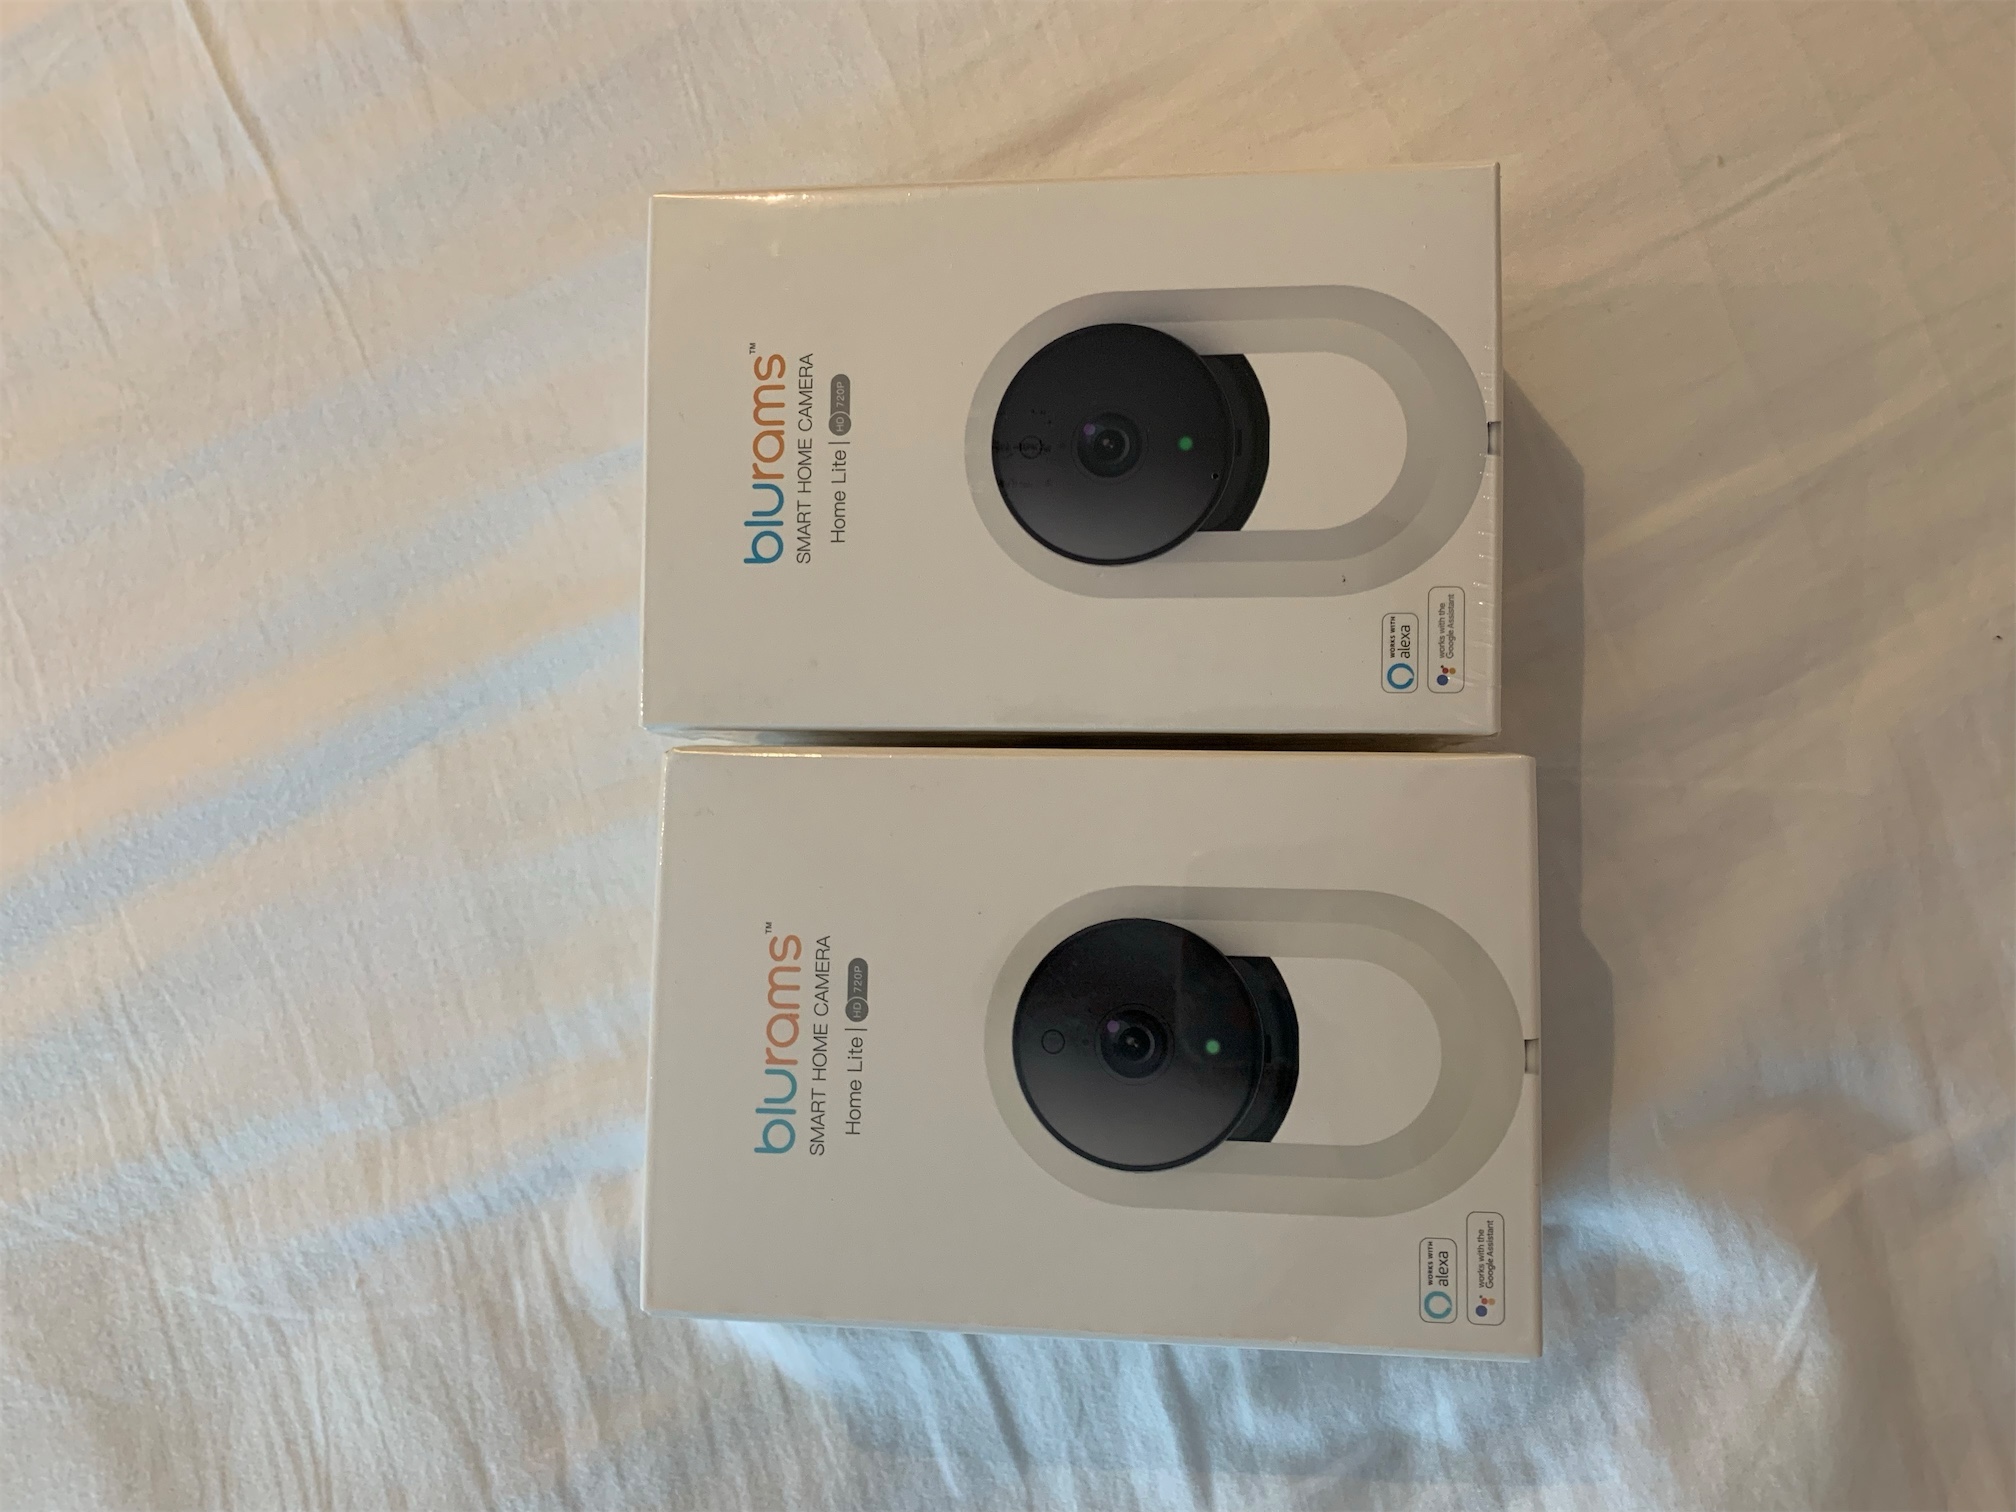 camaras y audio - Se venden dos Cámaras de Seguridad totalmente nuevas compatible con Alexa